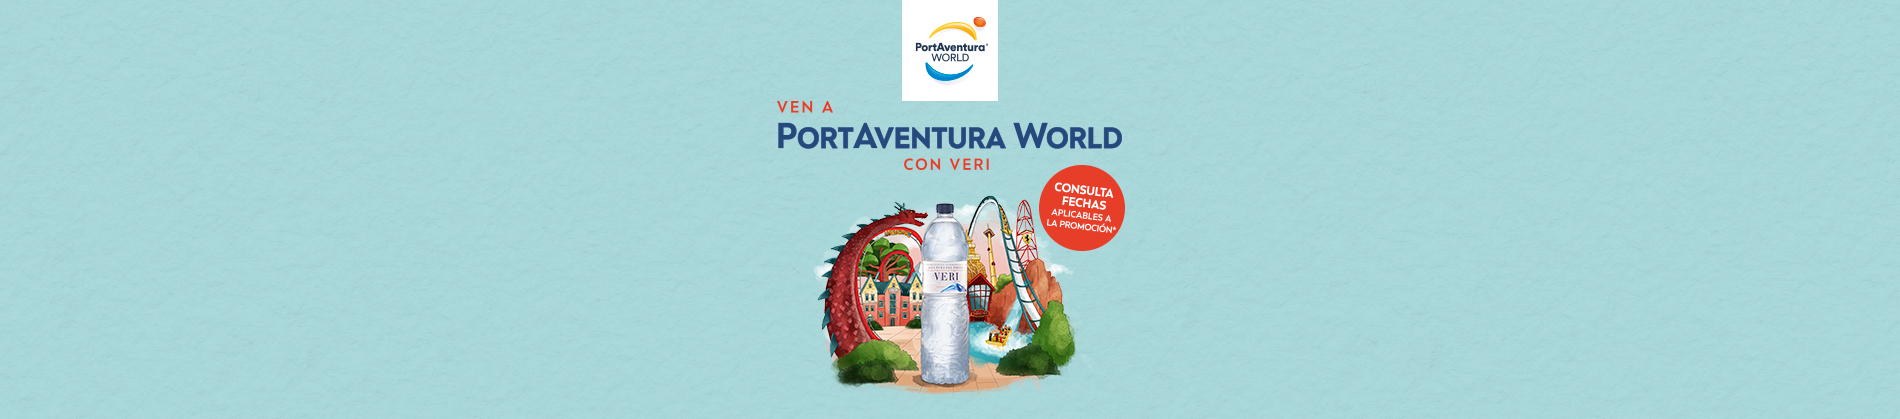 Ven a PortAventura World con Veri